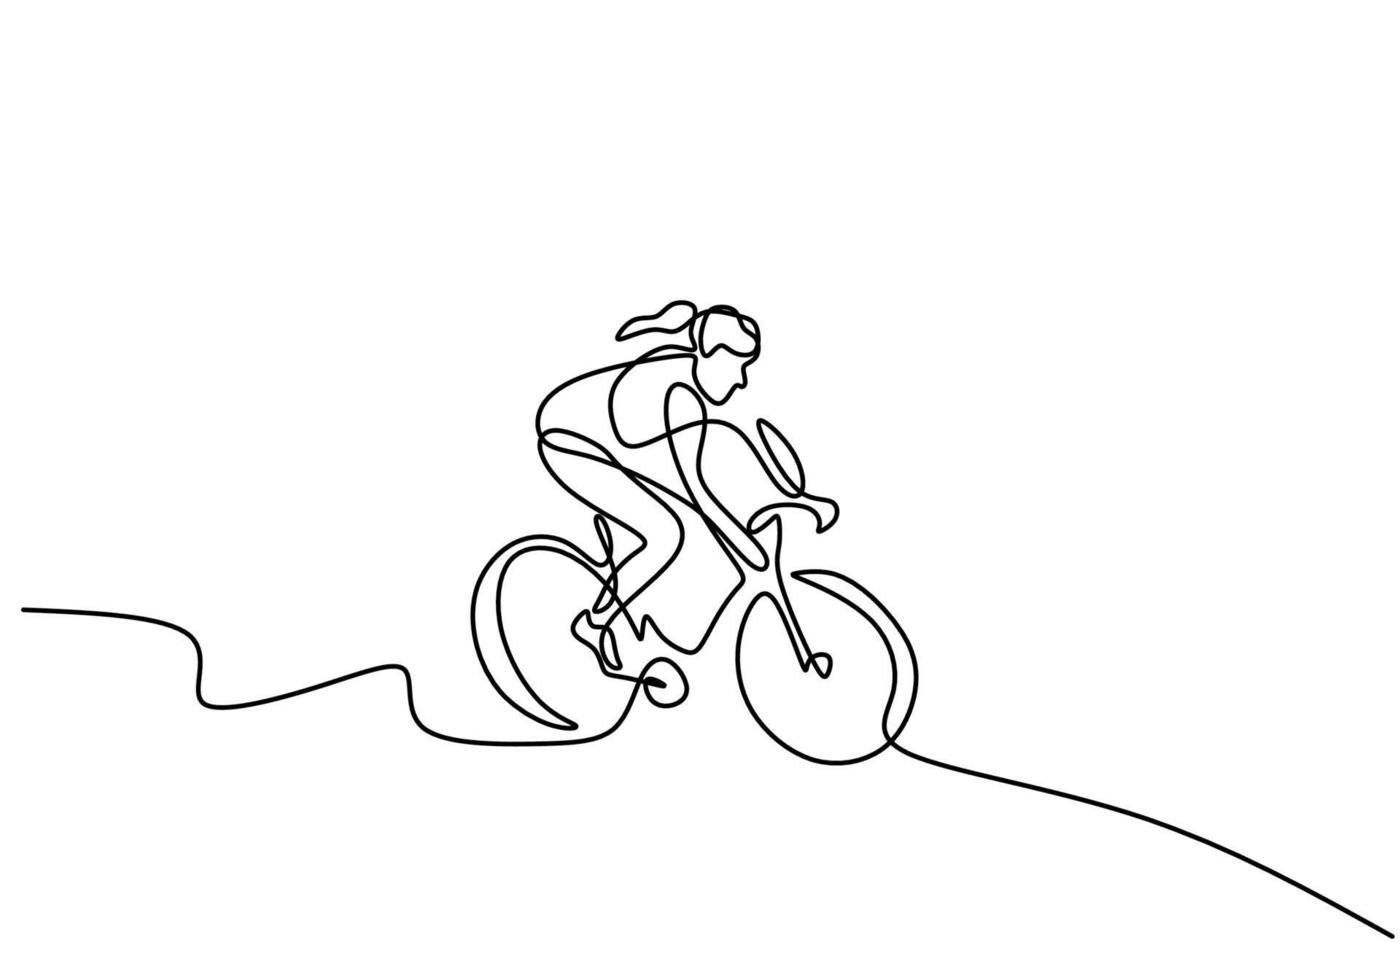 Kontinuierliche Strichzeichnung des Fokus der jungen, energiegeladenen, sportlichen Radrennfahrerin trainiert ihre Fähigkeiten auf dem Radweg. sportliches Mädchen, das ihr Fahrrad so schnell in die Pedale tritt. Rennrad-Konzept. Vektorillustration vektor